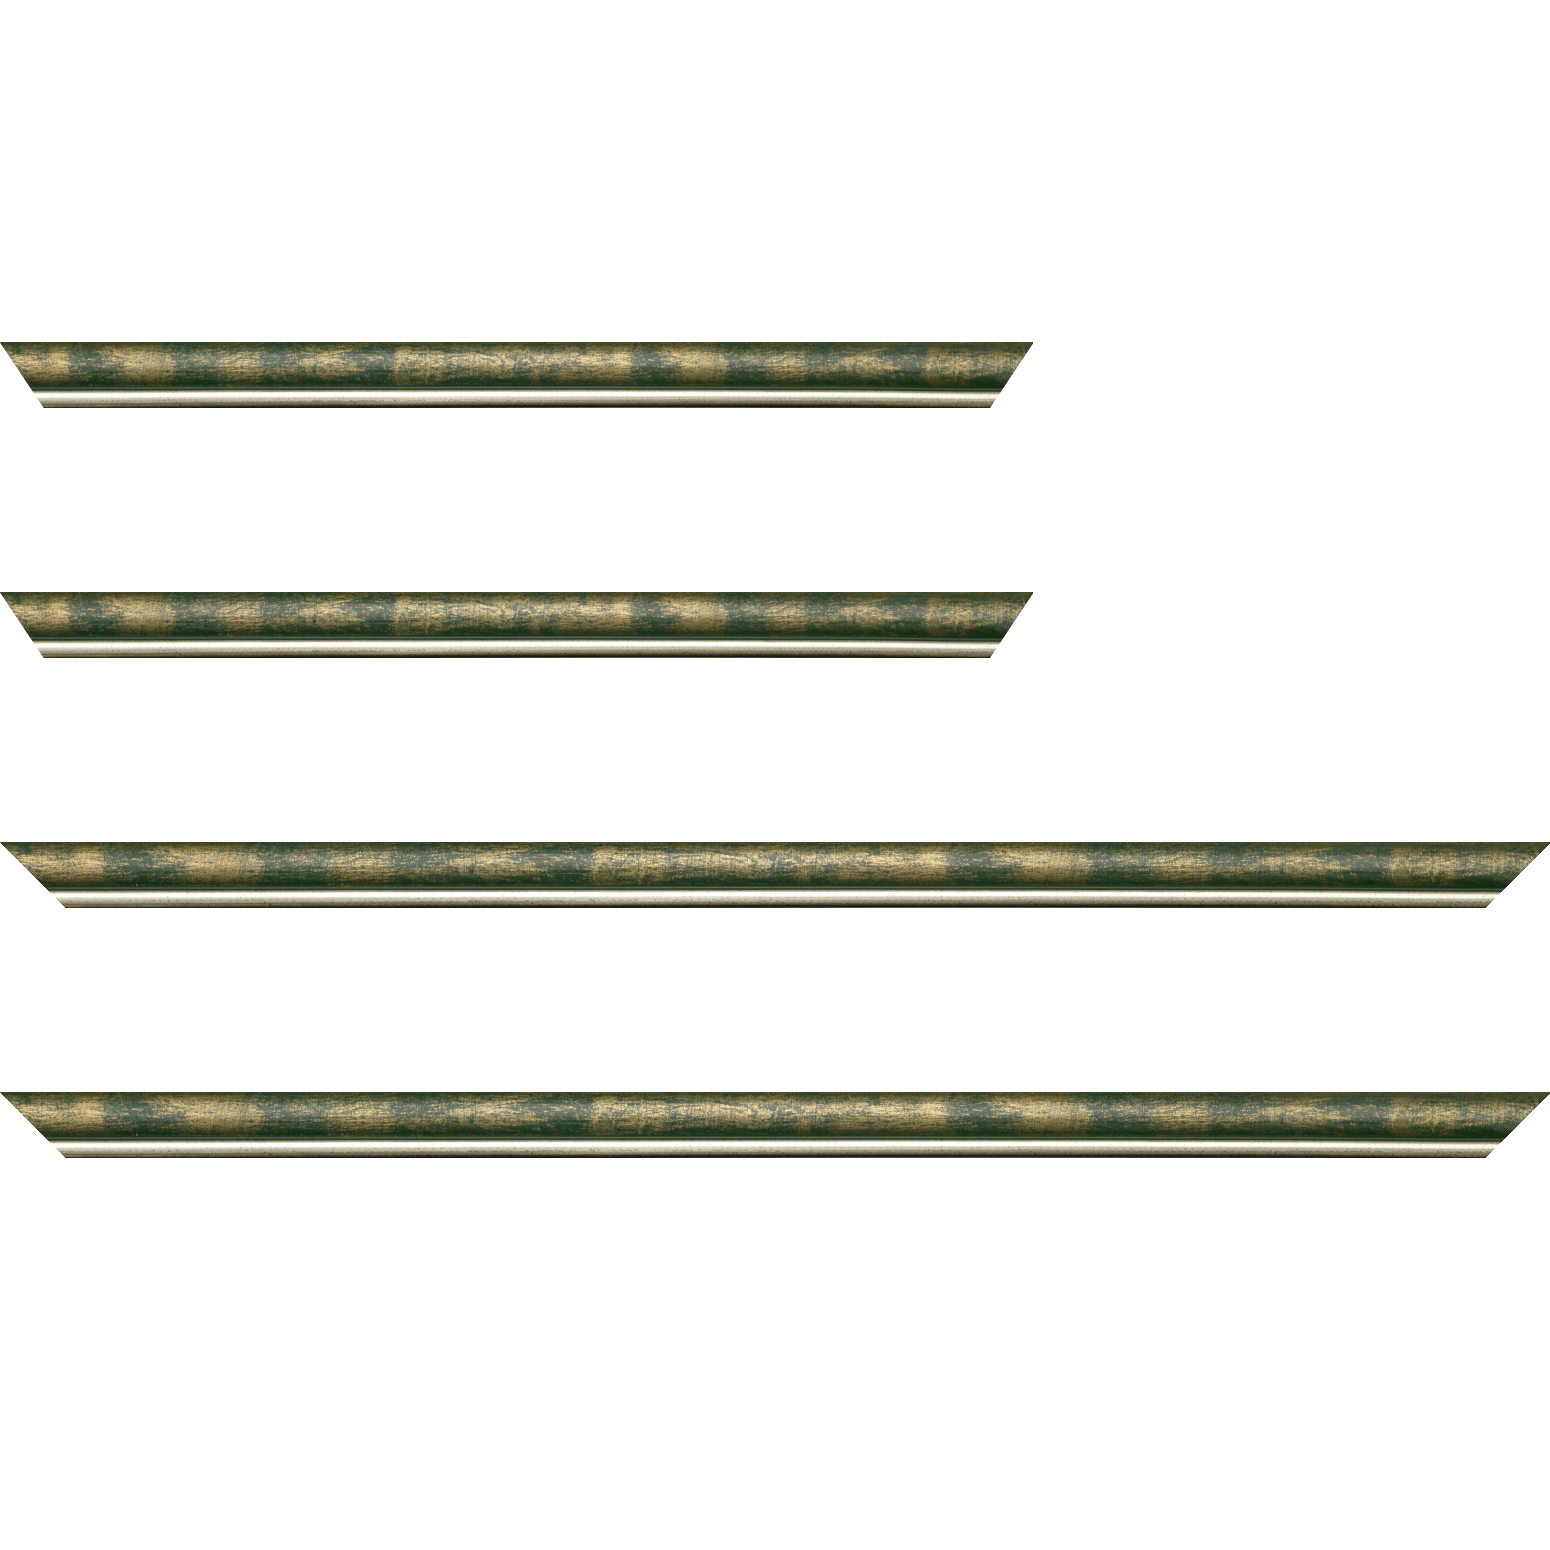 Baguette bois profil arrondi largeur 2.1cm  couleur vert fond or filet argent chaud - 61x46